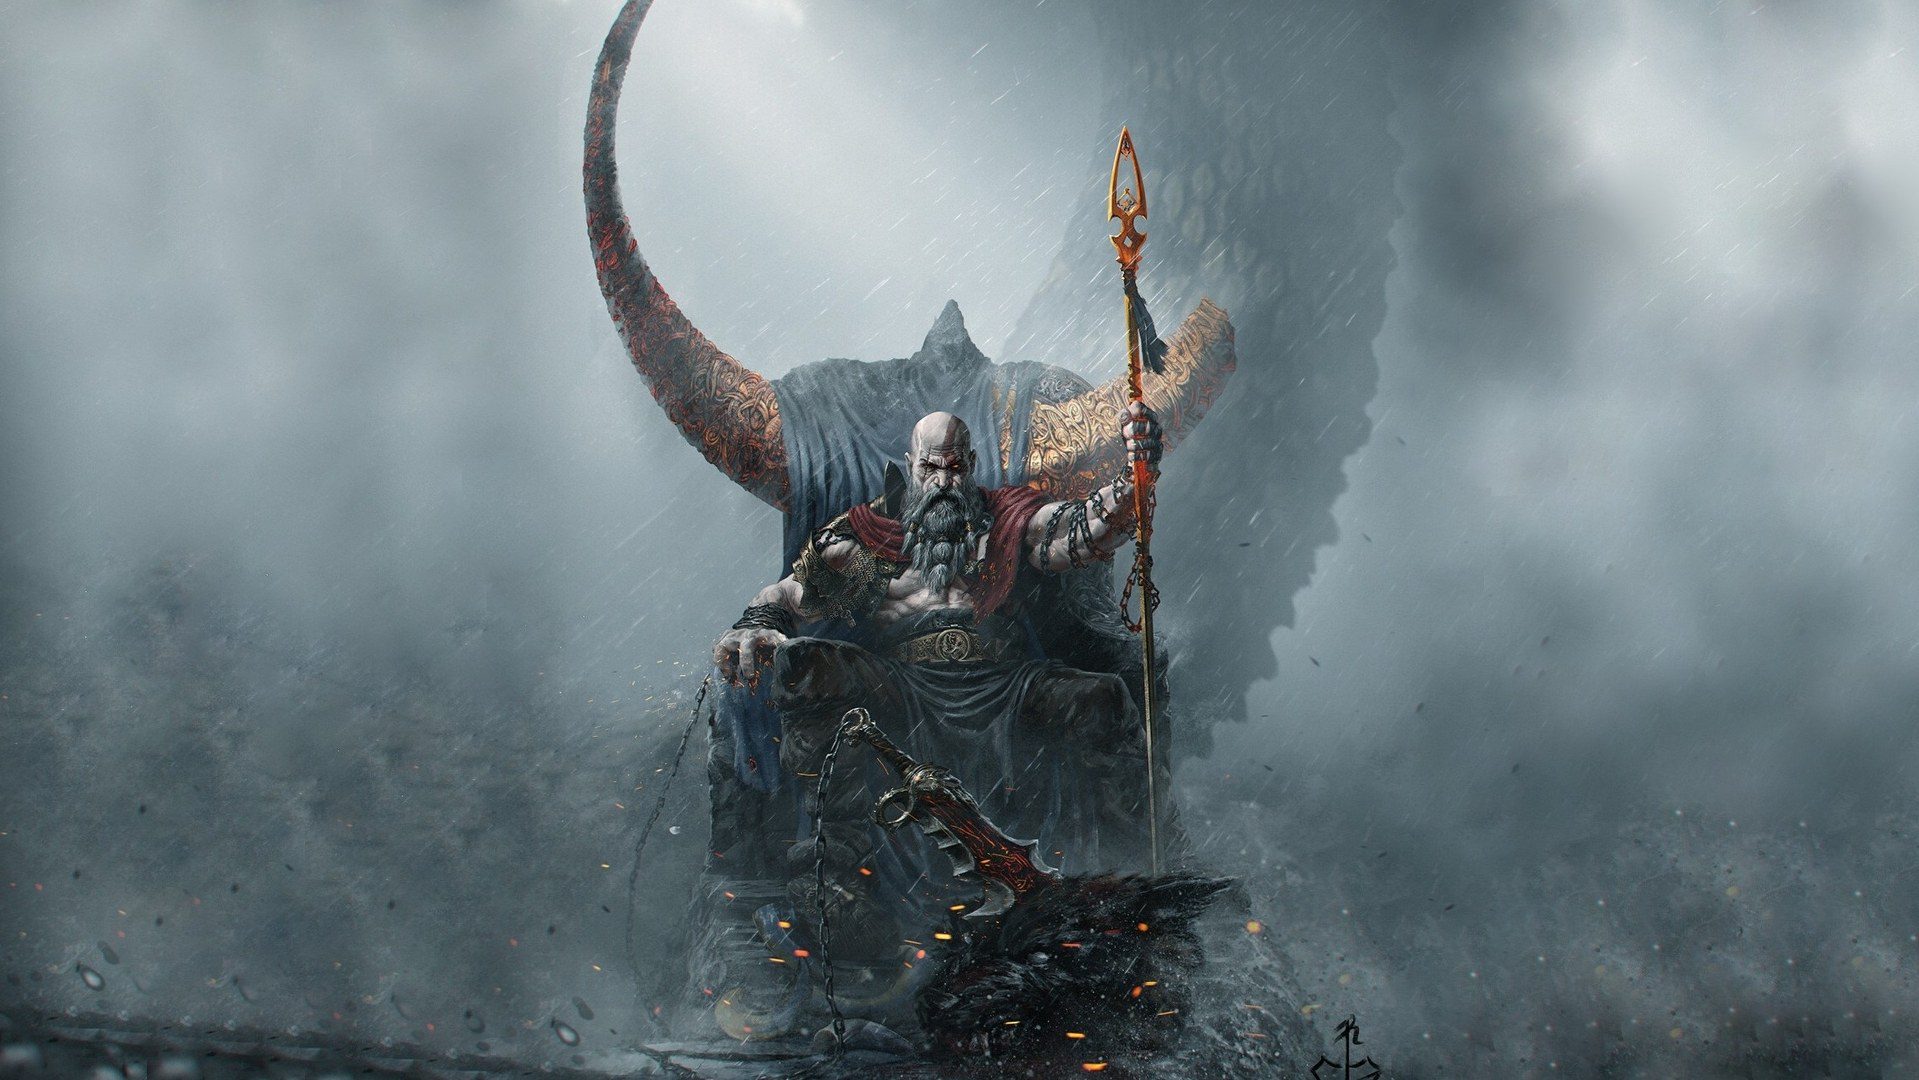 قابلیت های جدید کریتوس در بازی God of War: Ragnarok